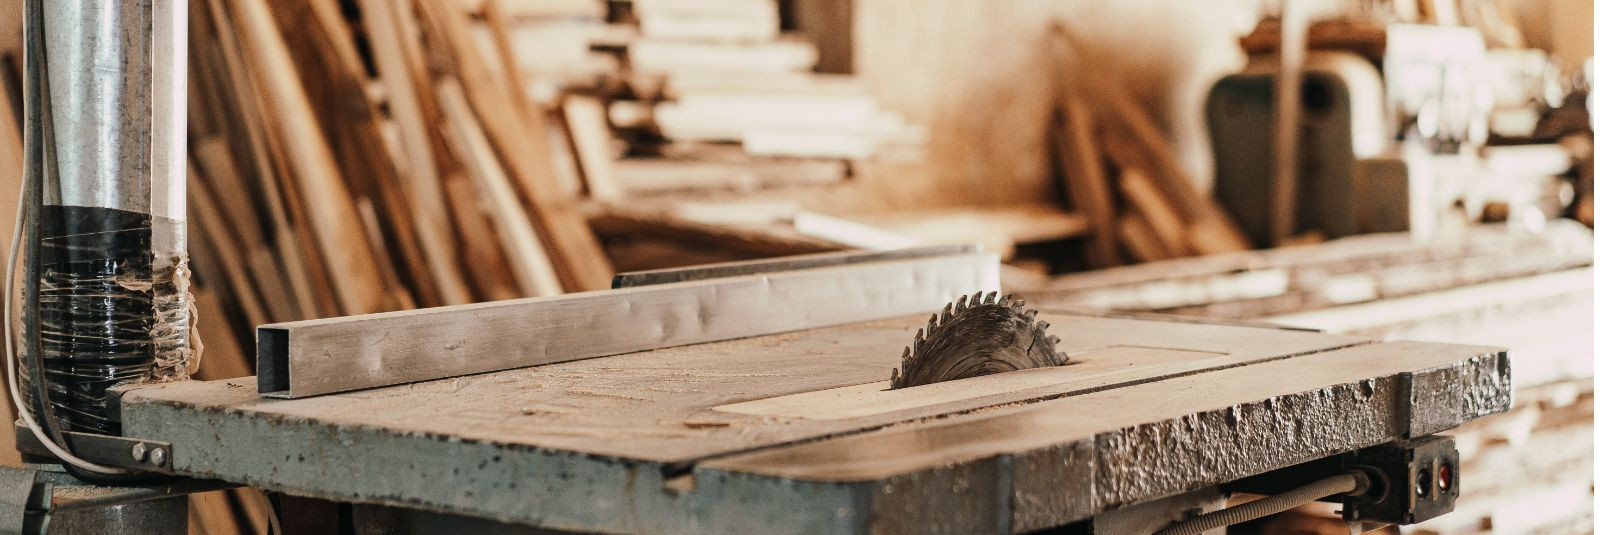 Kui oled kirglik puidutööline või professionaalne tisler, tead sa, et töö tulemus sõltub paljuski sinu kasutatavatest tööriistadest ja seadmetest. Üks olulisema